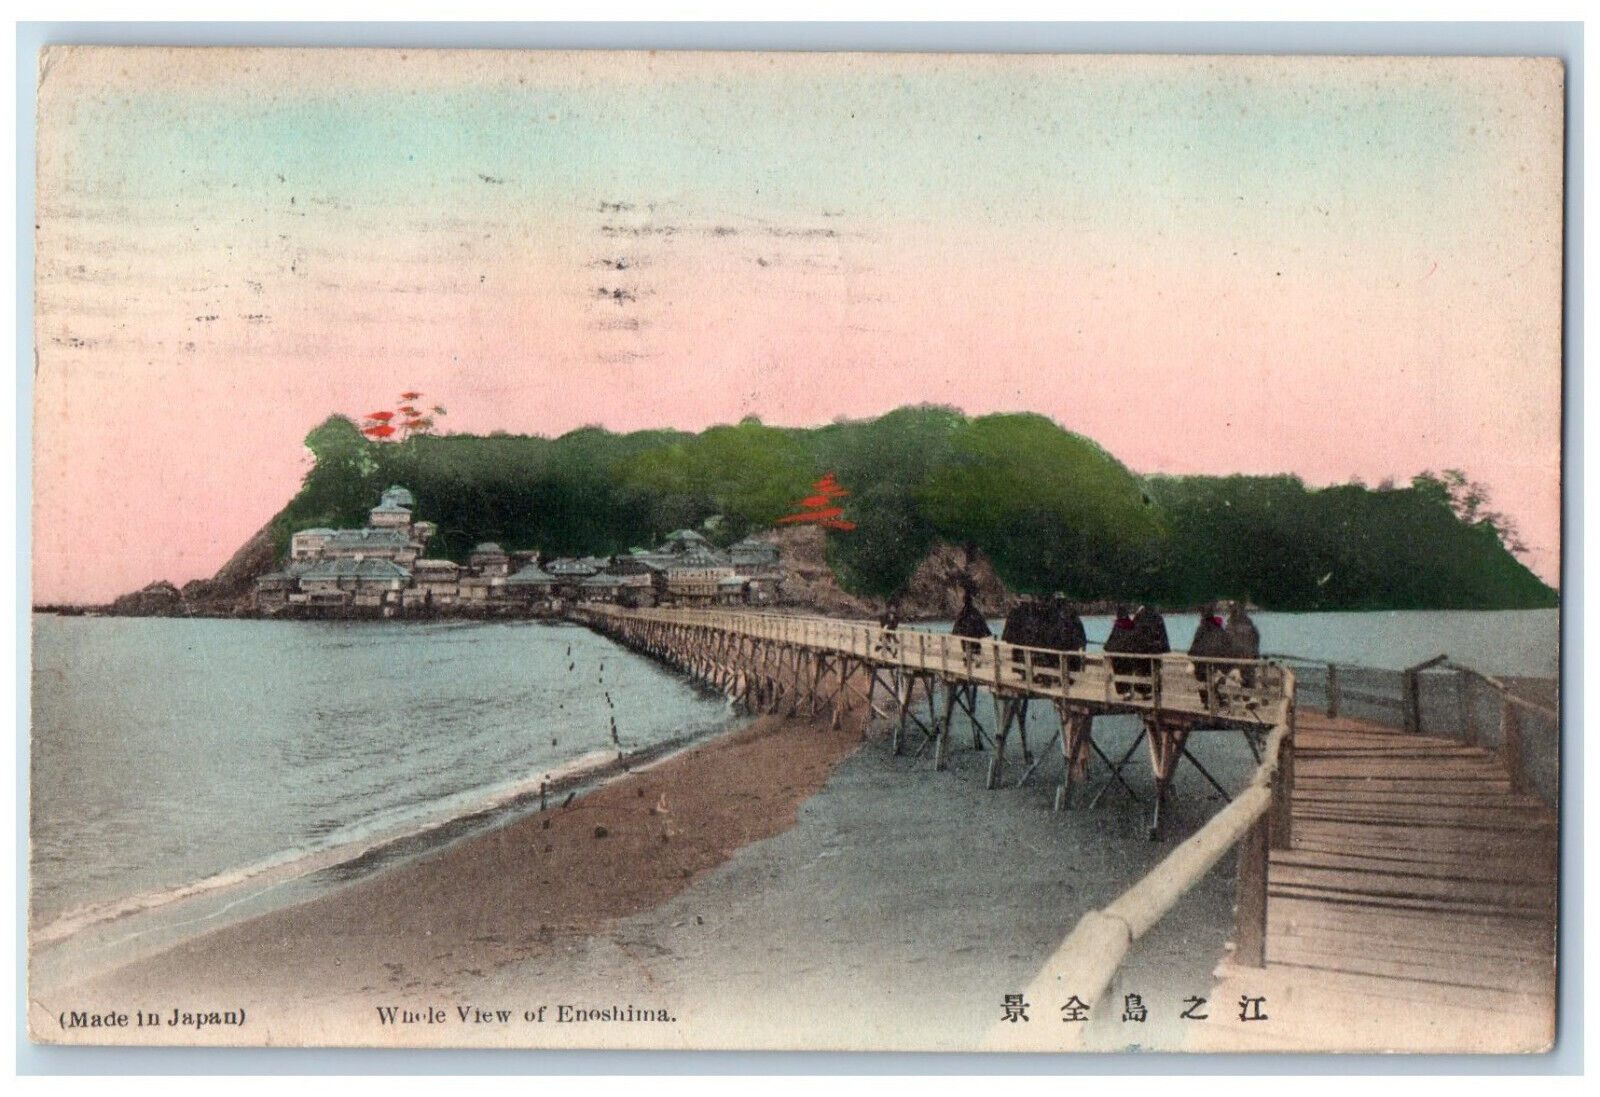 Kanagawa Prefecture Japan Postcard Whole View of Enoshima Bridge Walking c1910